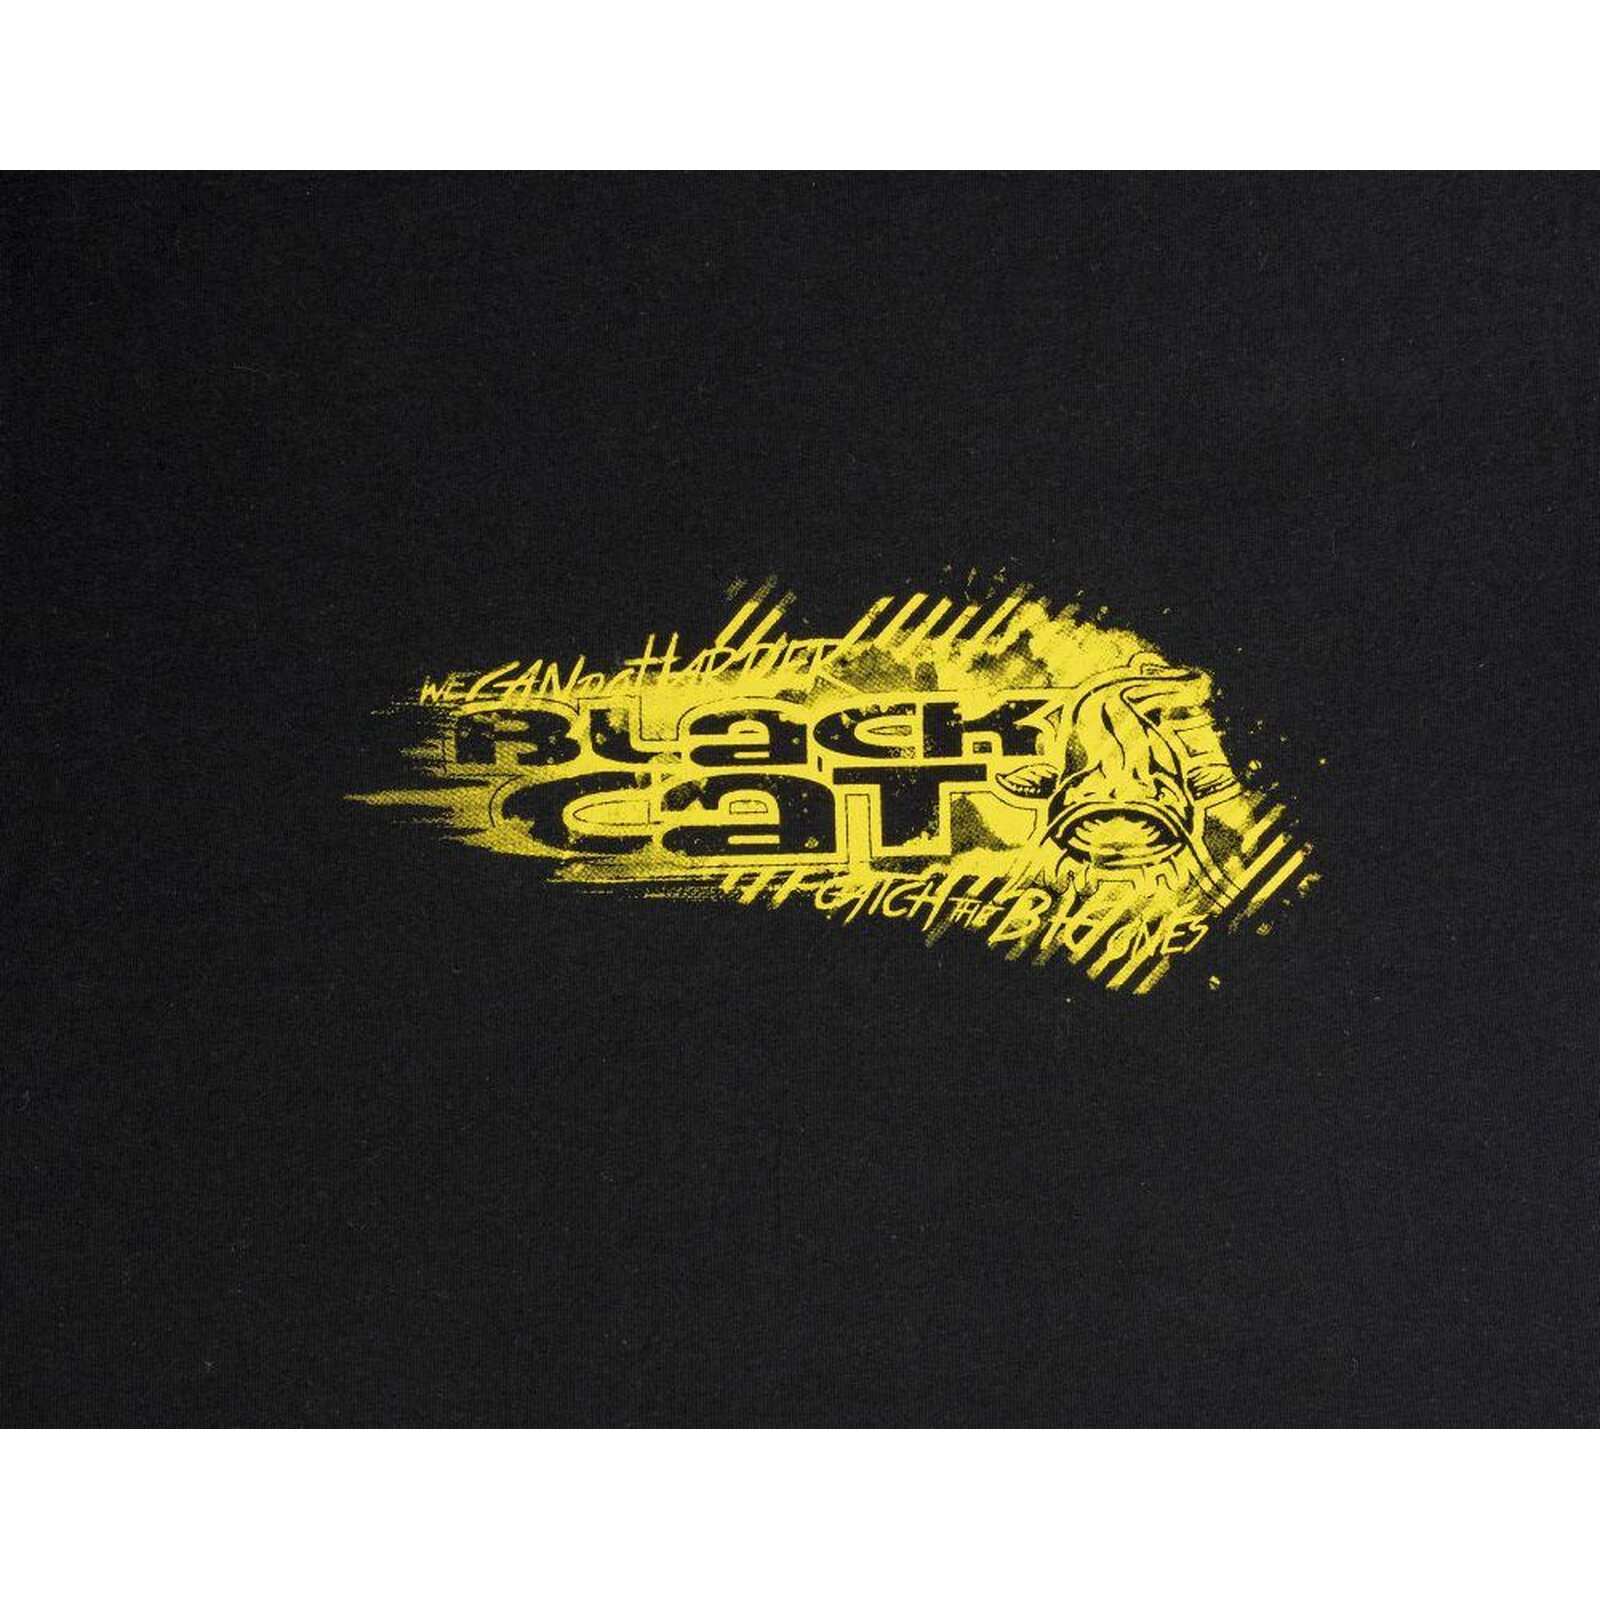 Black Cat Black Shirt XL